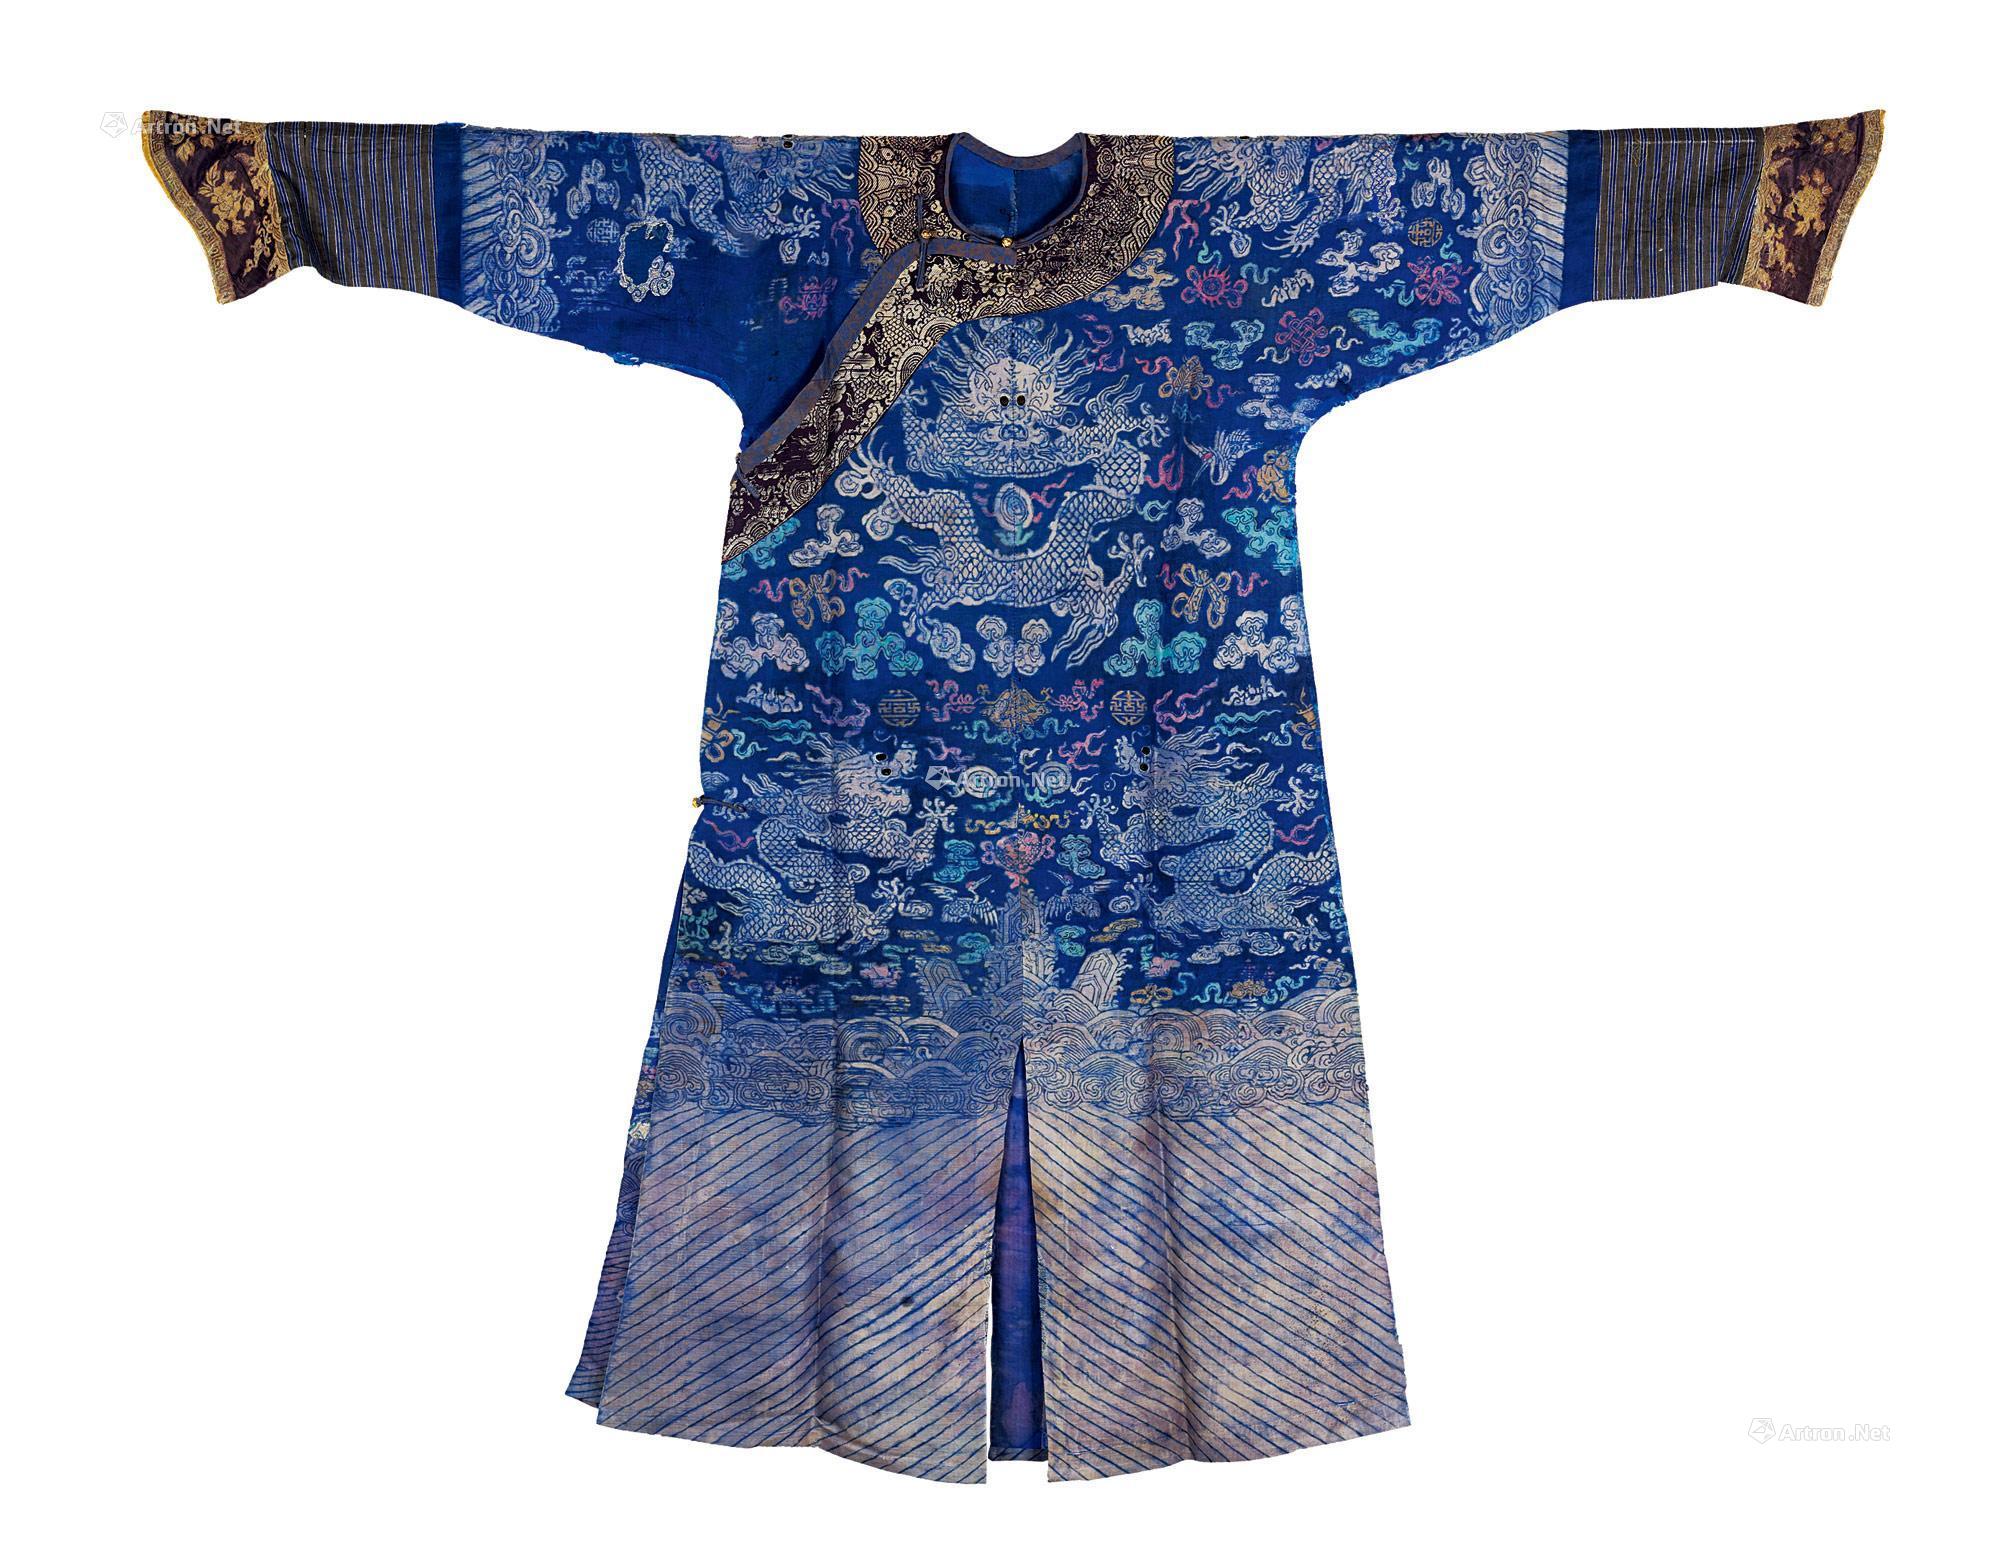 1413 清 蓝色织锦龙袍